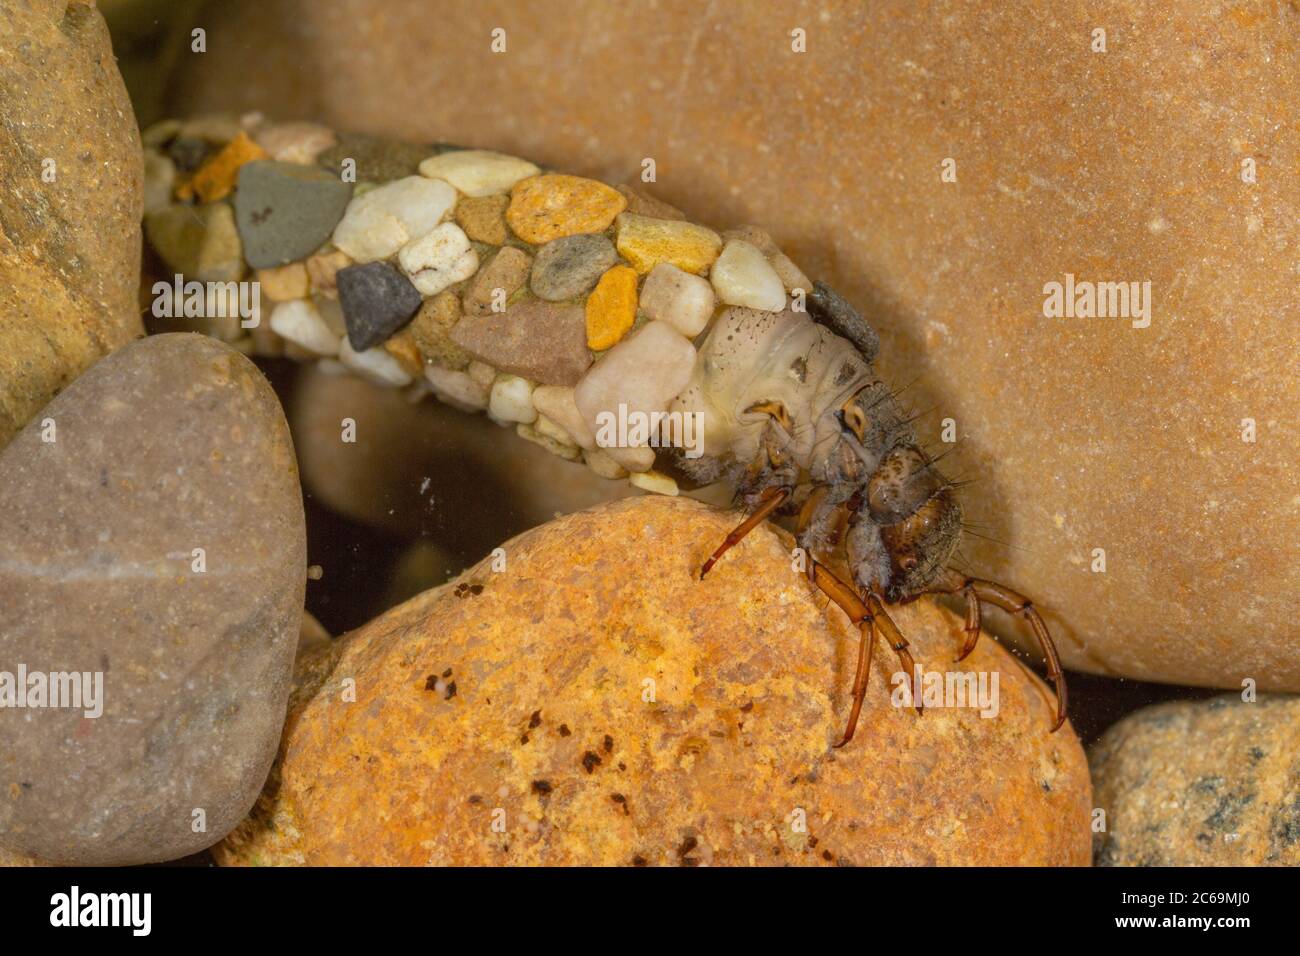 Les mouches de caddis (Trichoptera), sur des galets avec un boîtier en petites pierres, Allemagne Banque D'Images